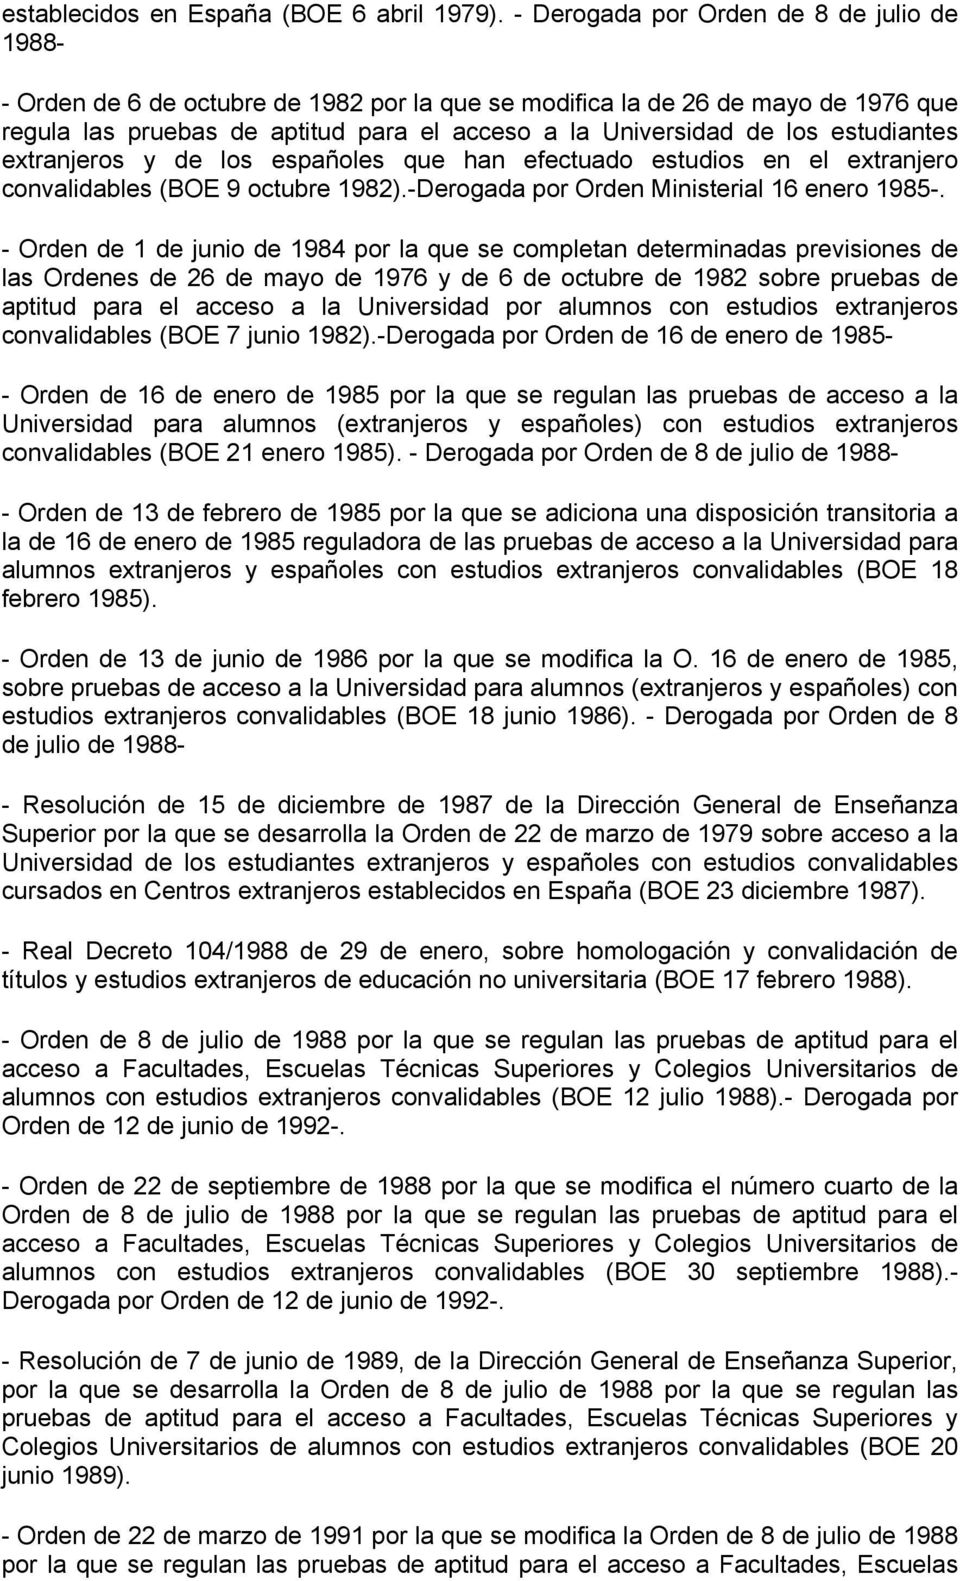 estudiantes extranjeros y de los españoles que han efectuado estudios en el extranjero convalidables (BOE 9 octubre 1982).-Derogada por Orden Ministerial 16 enero 1985-.